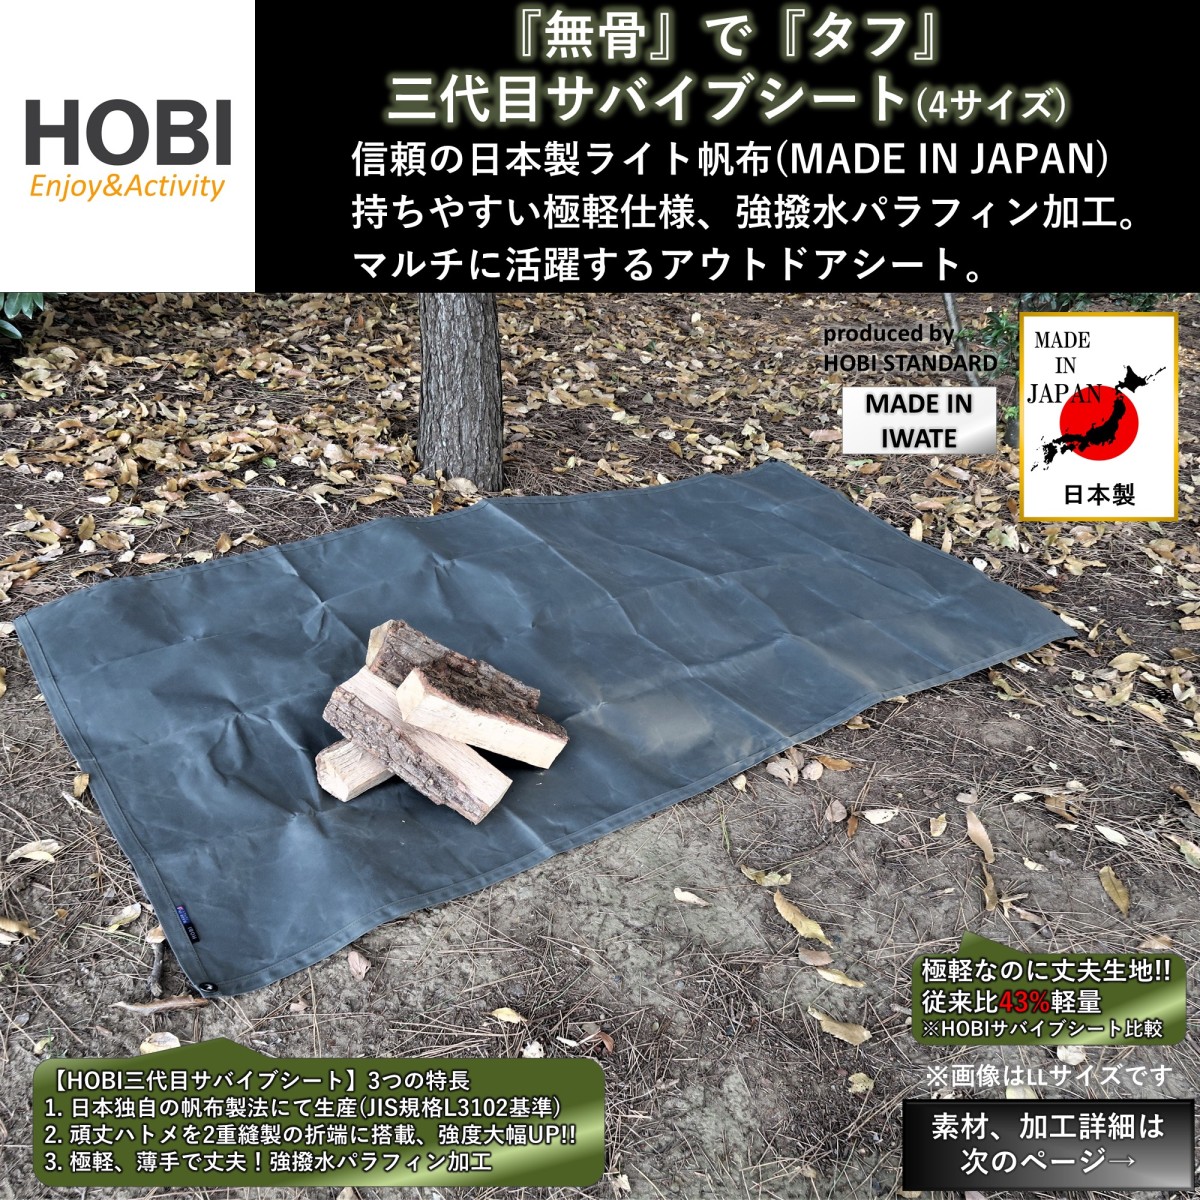  три поколения скумбиря Eve сиденье ML/LL/3L/4L [HOBI] сделано в Японии высшее легкий прекрасное качество брезент тент на землю водоотталкивающий нет .. жесткий легкий мульти- палатка отдых .. огонь . занавес кемпинг бизнес JAPAN